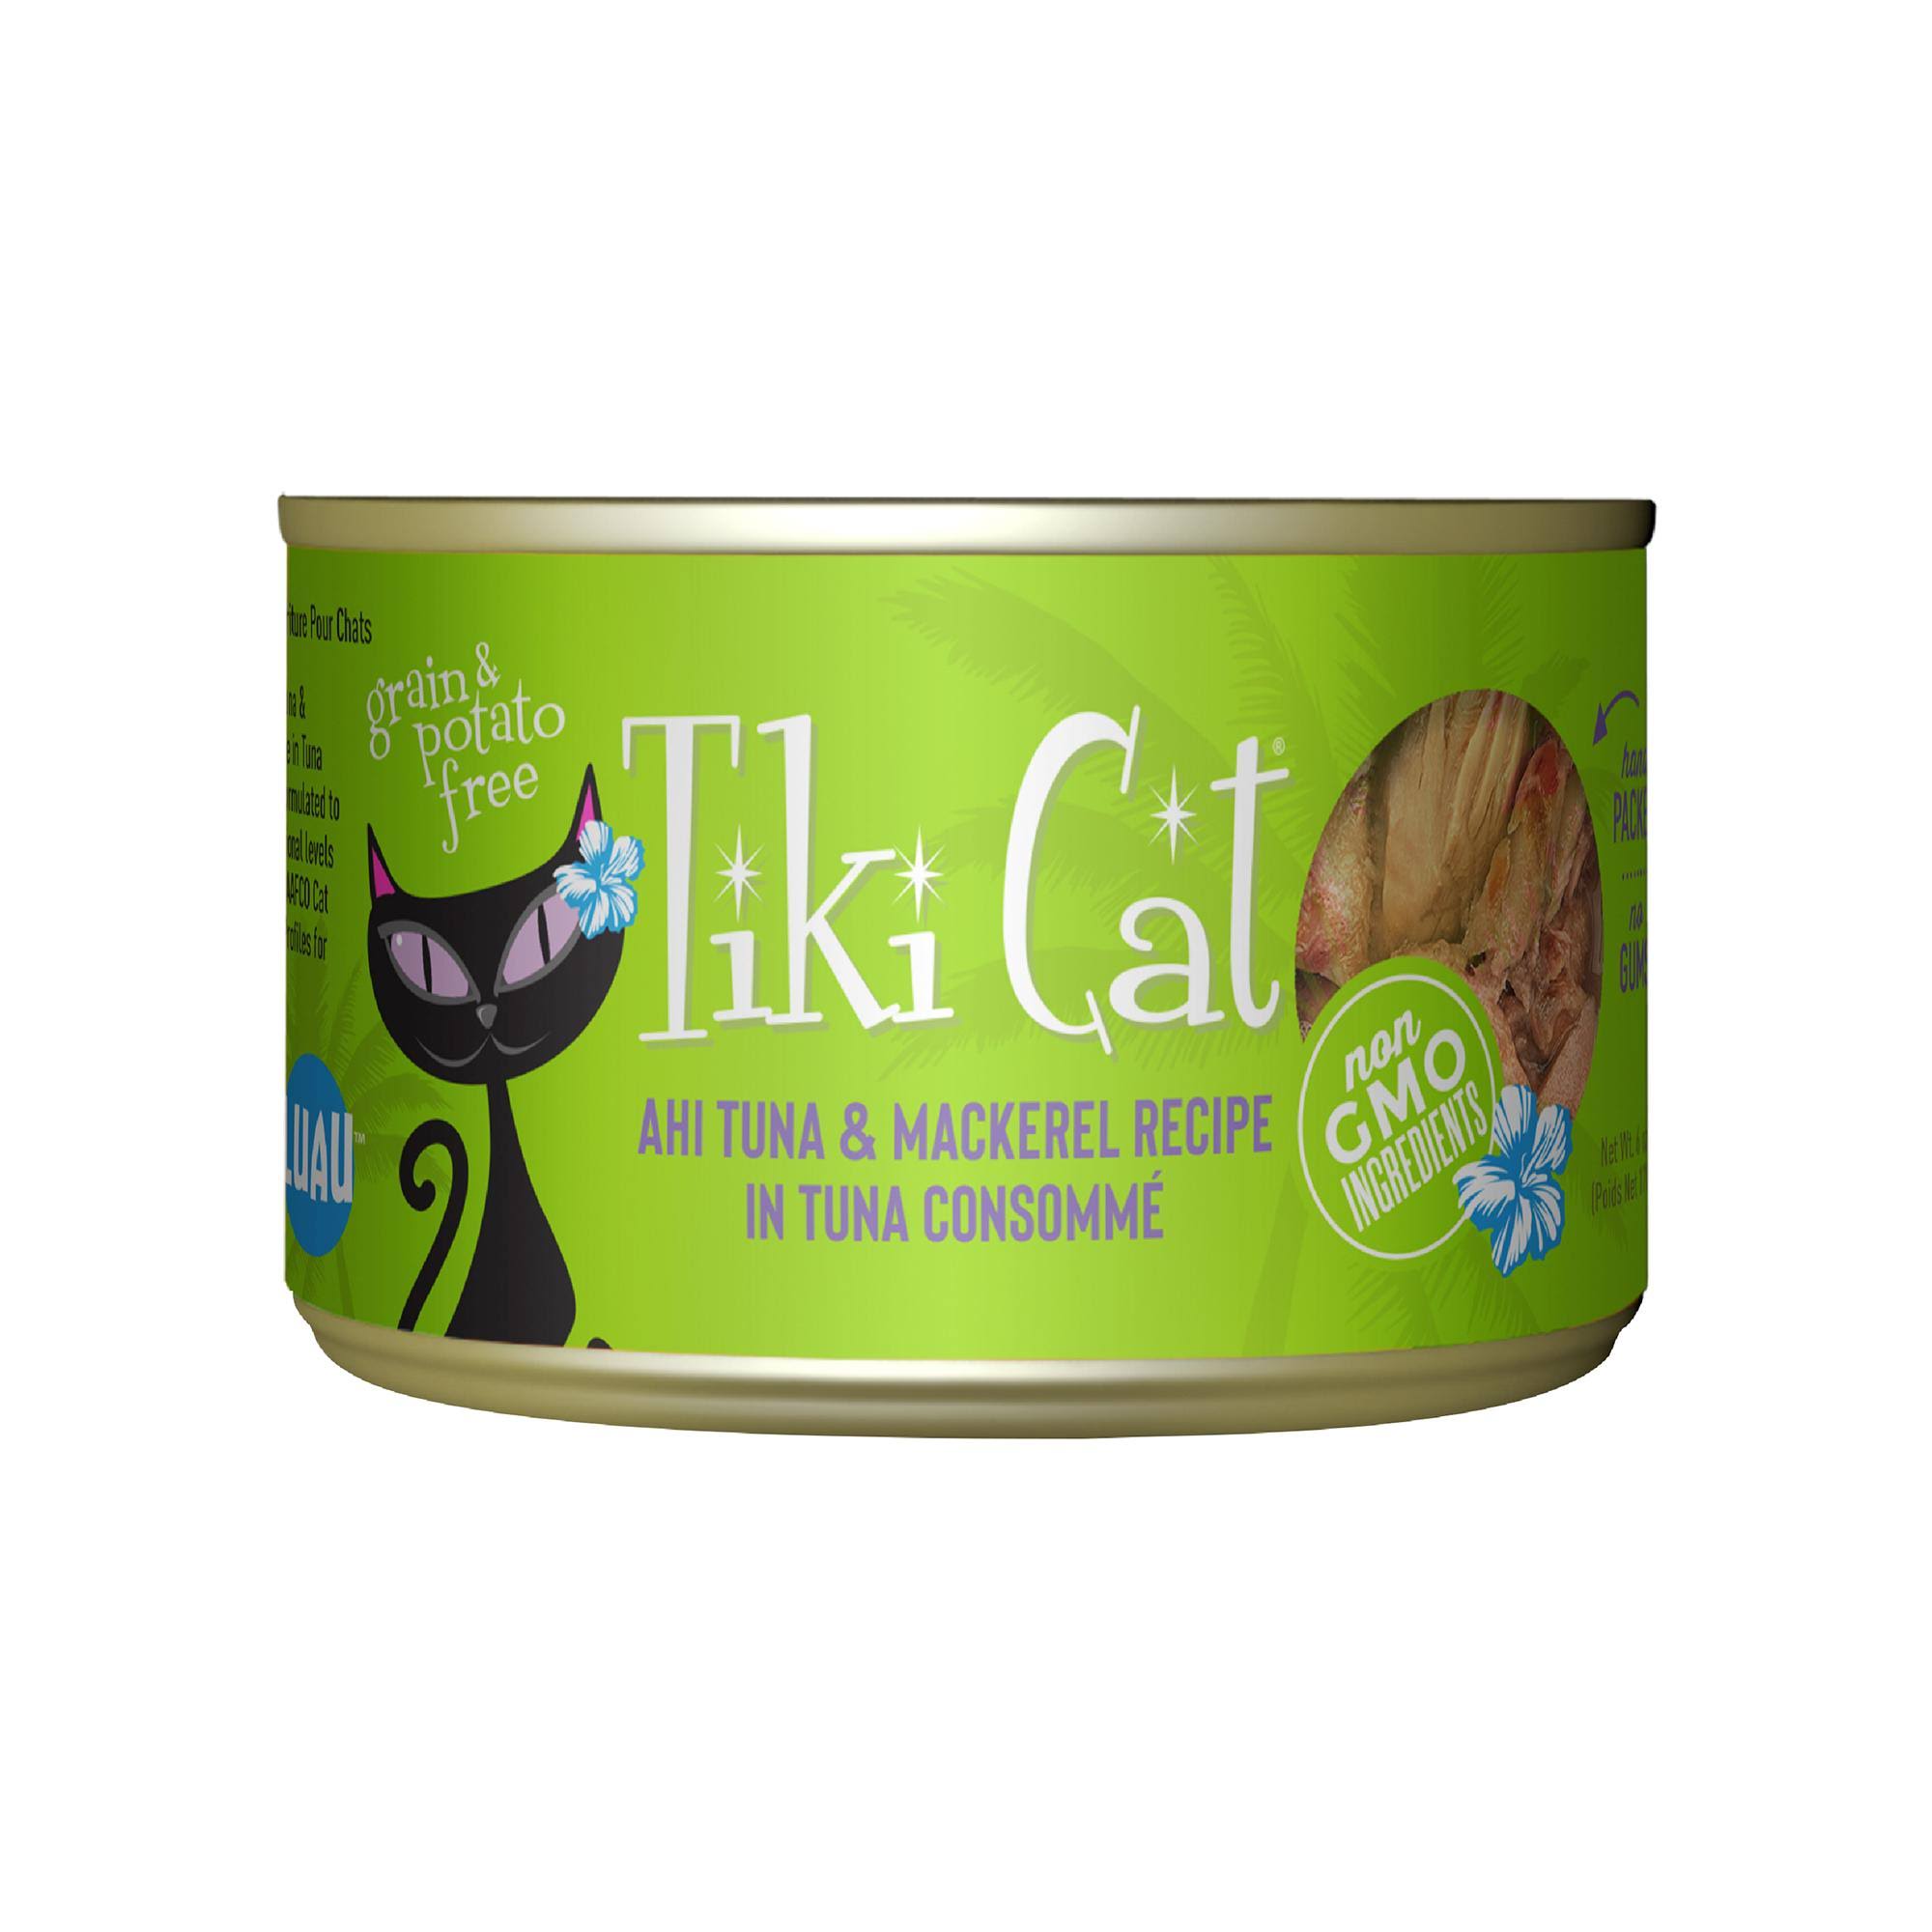 Tiki Cat Luau Ahi Tuna & Mackerel Recipe in Tuna Consomme, 6-oz